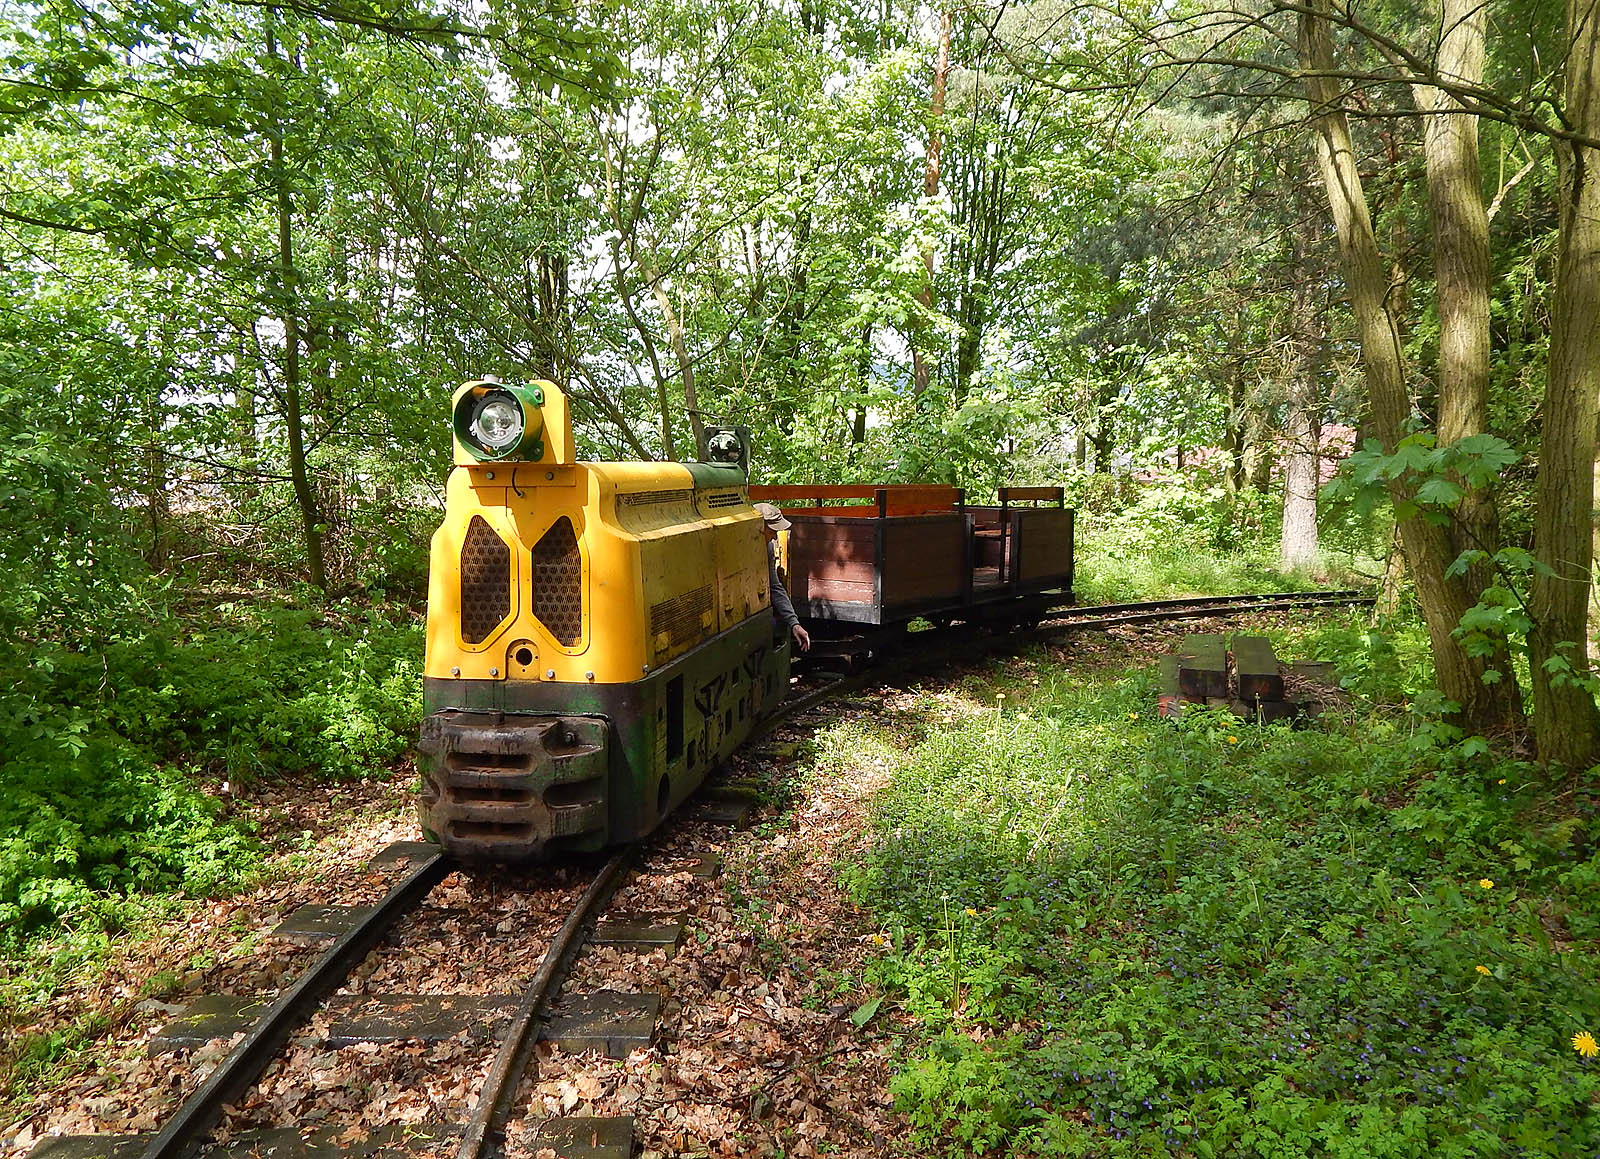 Lokomotiva č. 6 (BND30) je původem důlní stroj, ve kterém je strojvedoucí schovaný tak, aby nepřečníval profil lokomotivy. Na Plzenecké železnici se často používá pro jízdy s osobními vlaky. Do Plzence se dostala v roce 2002 z Kladenských dolů, konkrétně z Dolu Tuchlovice.